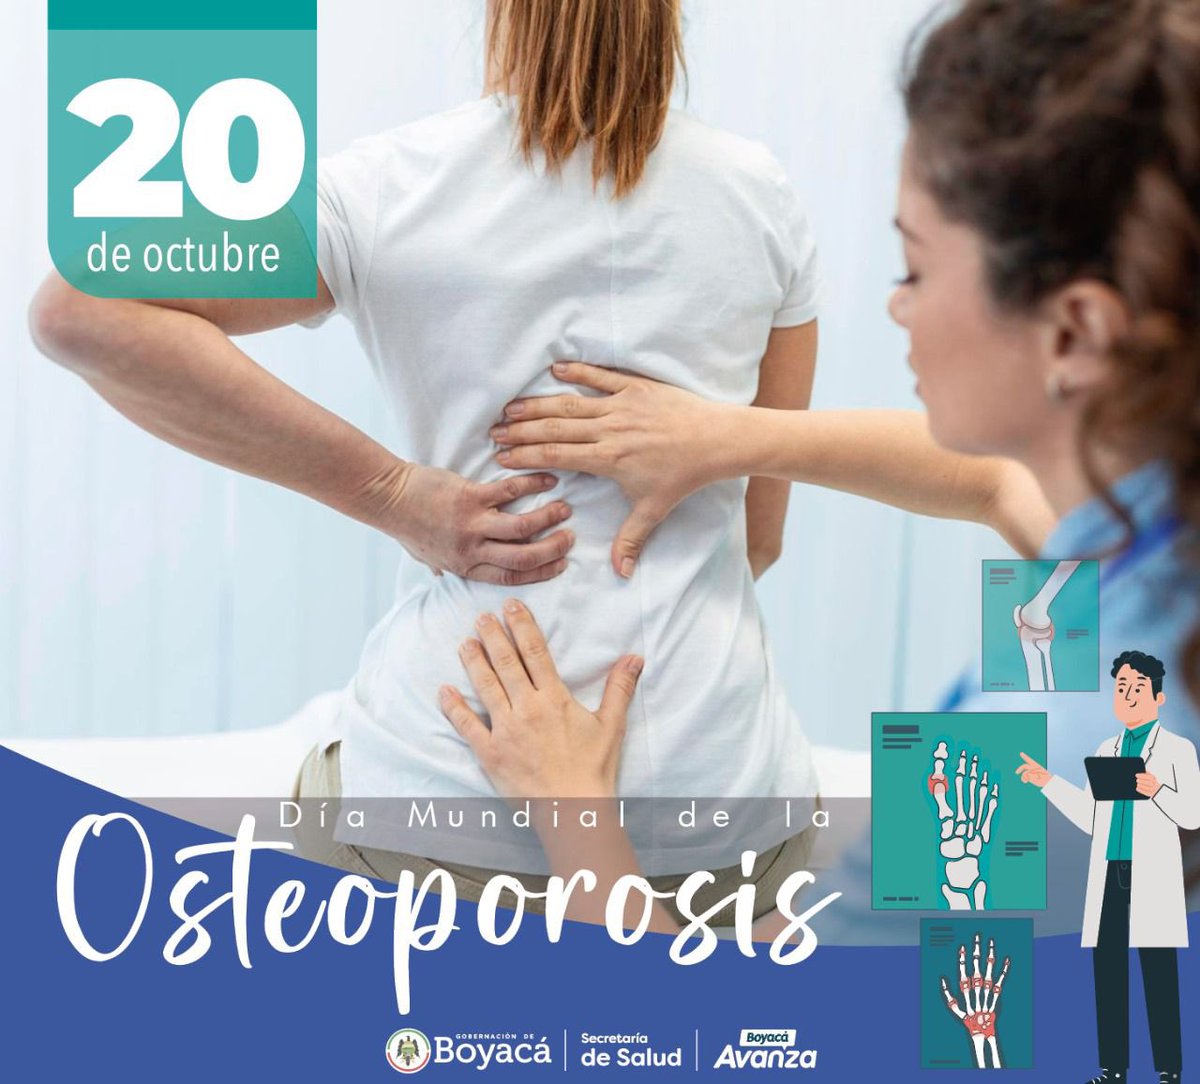 #Hoy en el Día Mundial de la Osteoporosis, recordemos la importancia de fortalecer nuestros huesos a través de una dieta balanceada, ejercicio regular y revisiones médicas periódicas. 

#DíaMundialdelaOsteoporosis #HuesosSaludables
#AsíBoyacáAvanza